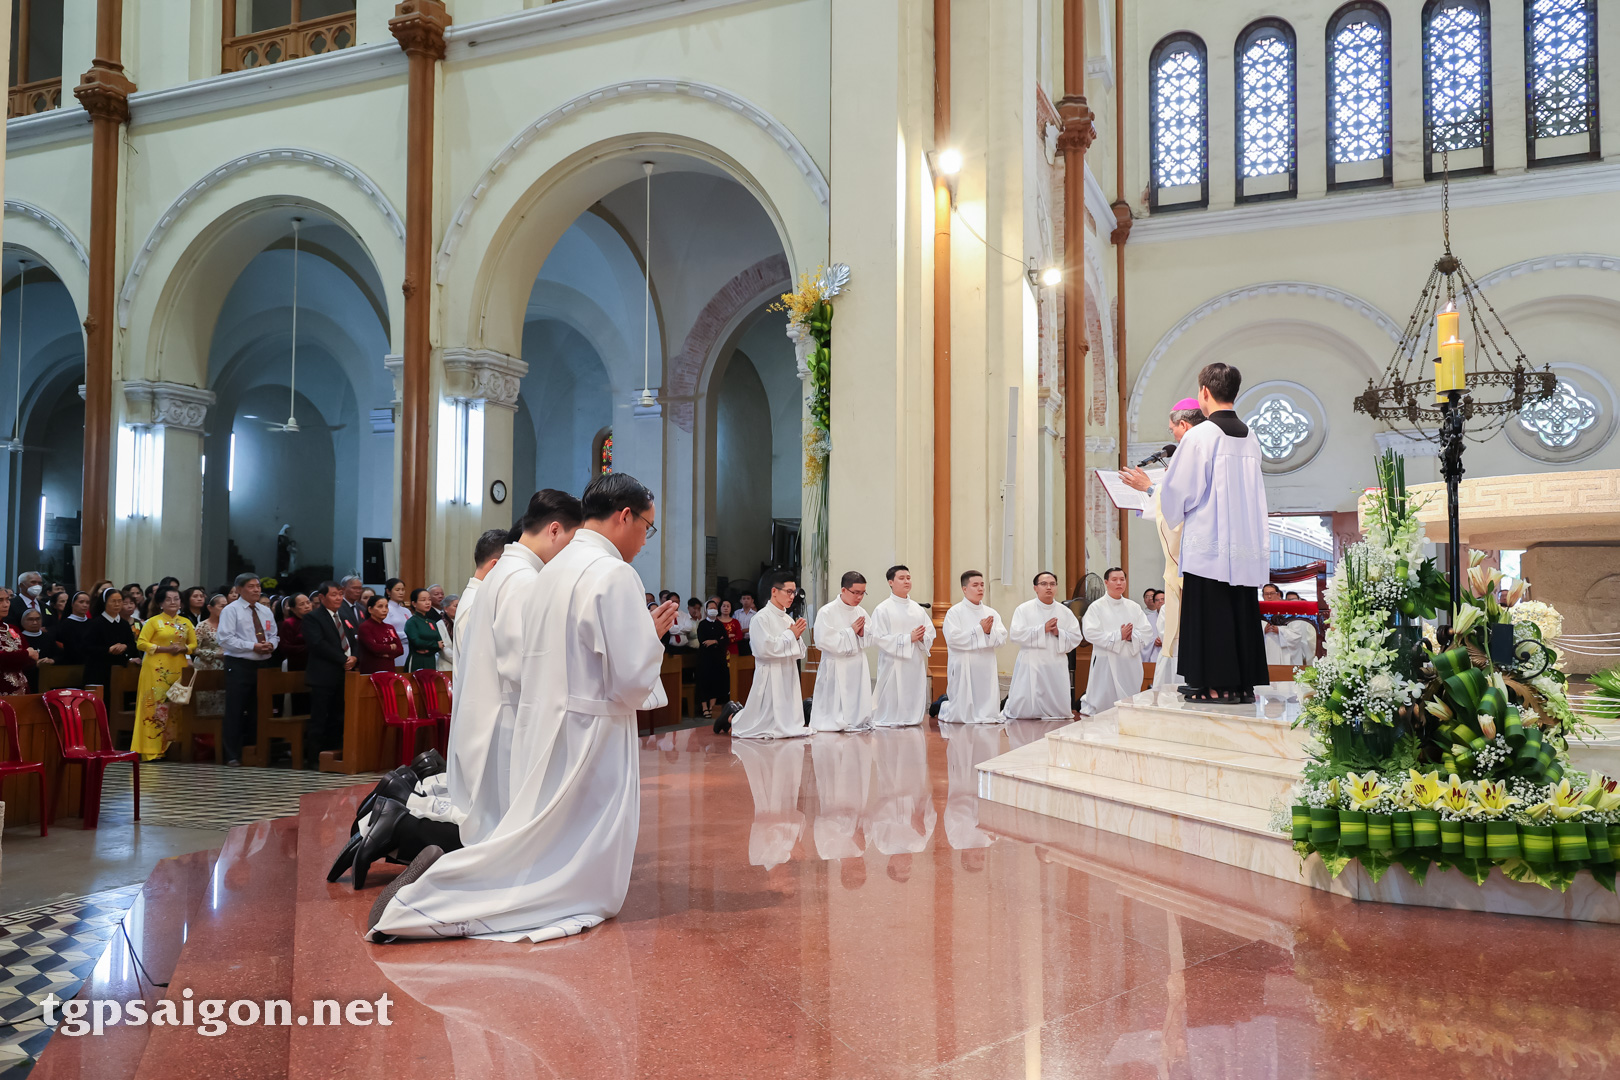 TGP Sài Gòn: Thánh lễ truyền chức Phó tế lúc 8g30 ngày 13-1-2023